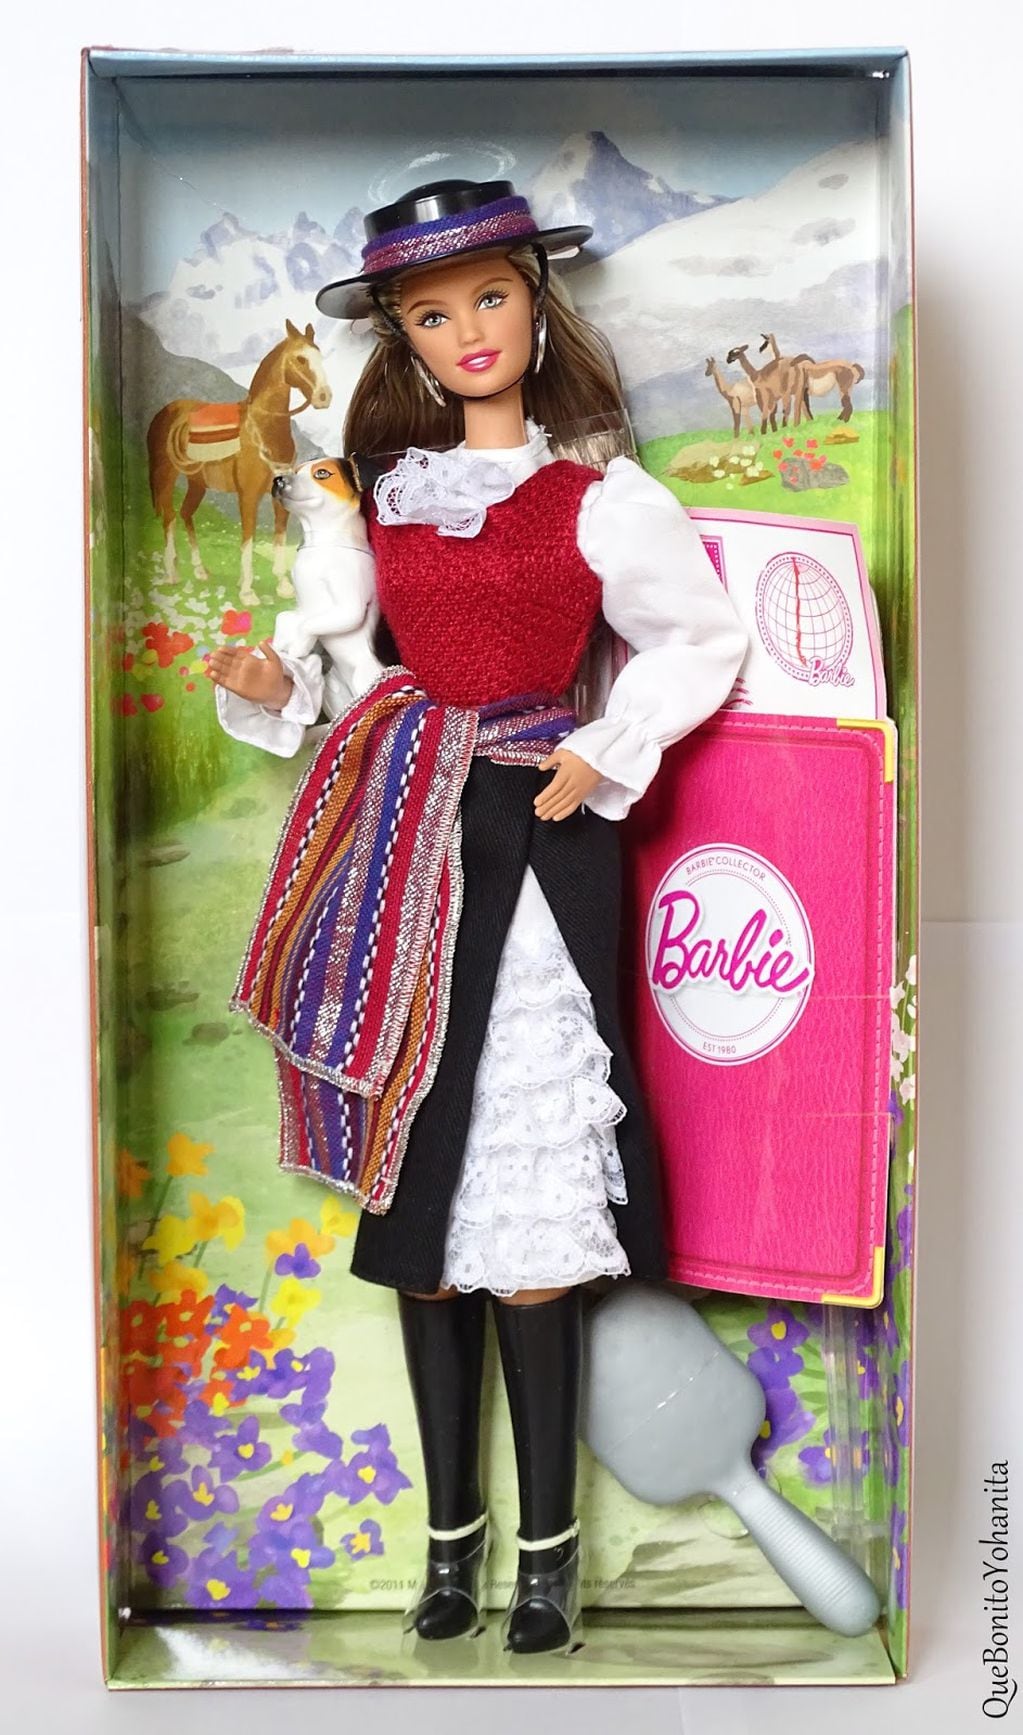 La polémica Barbie chilena que indignó a los coleccionistas